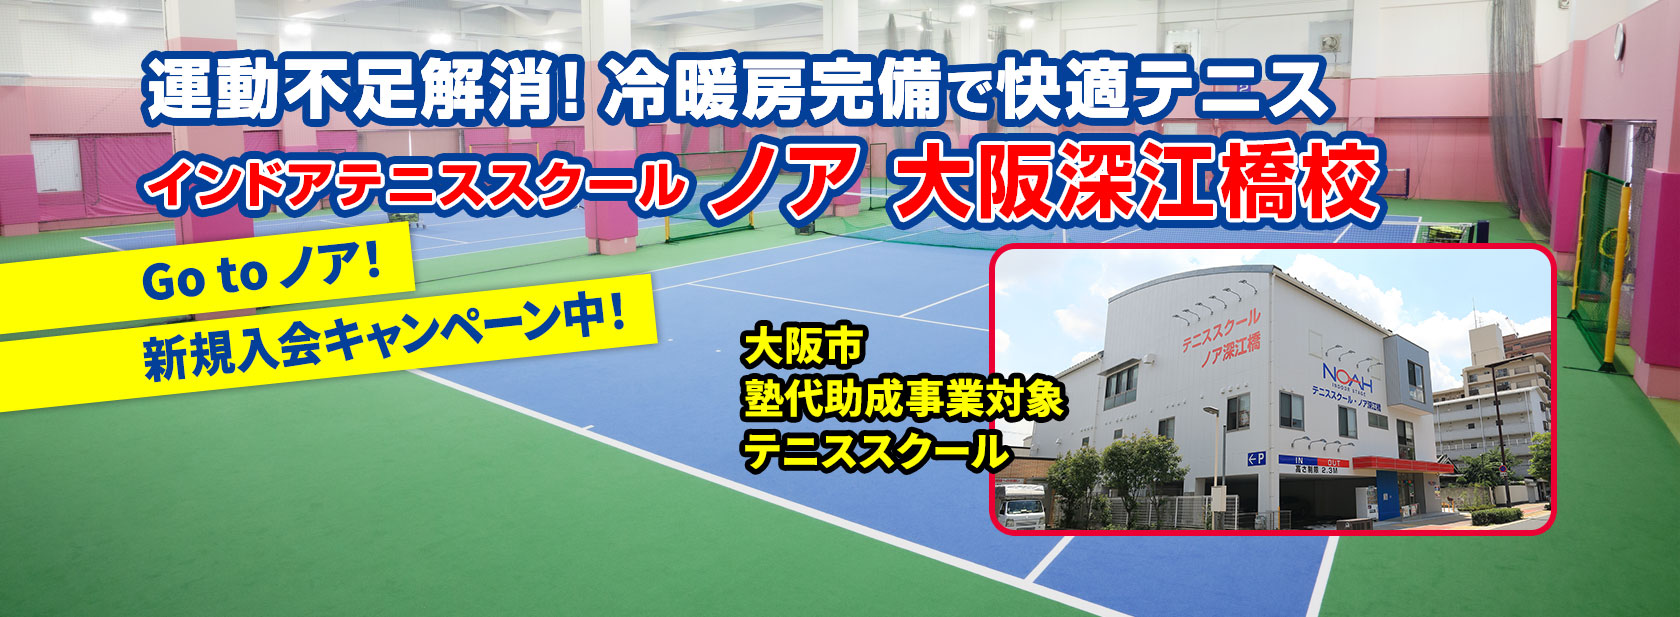 インドアテニススクール ノア大阪深江橋校